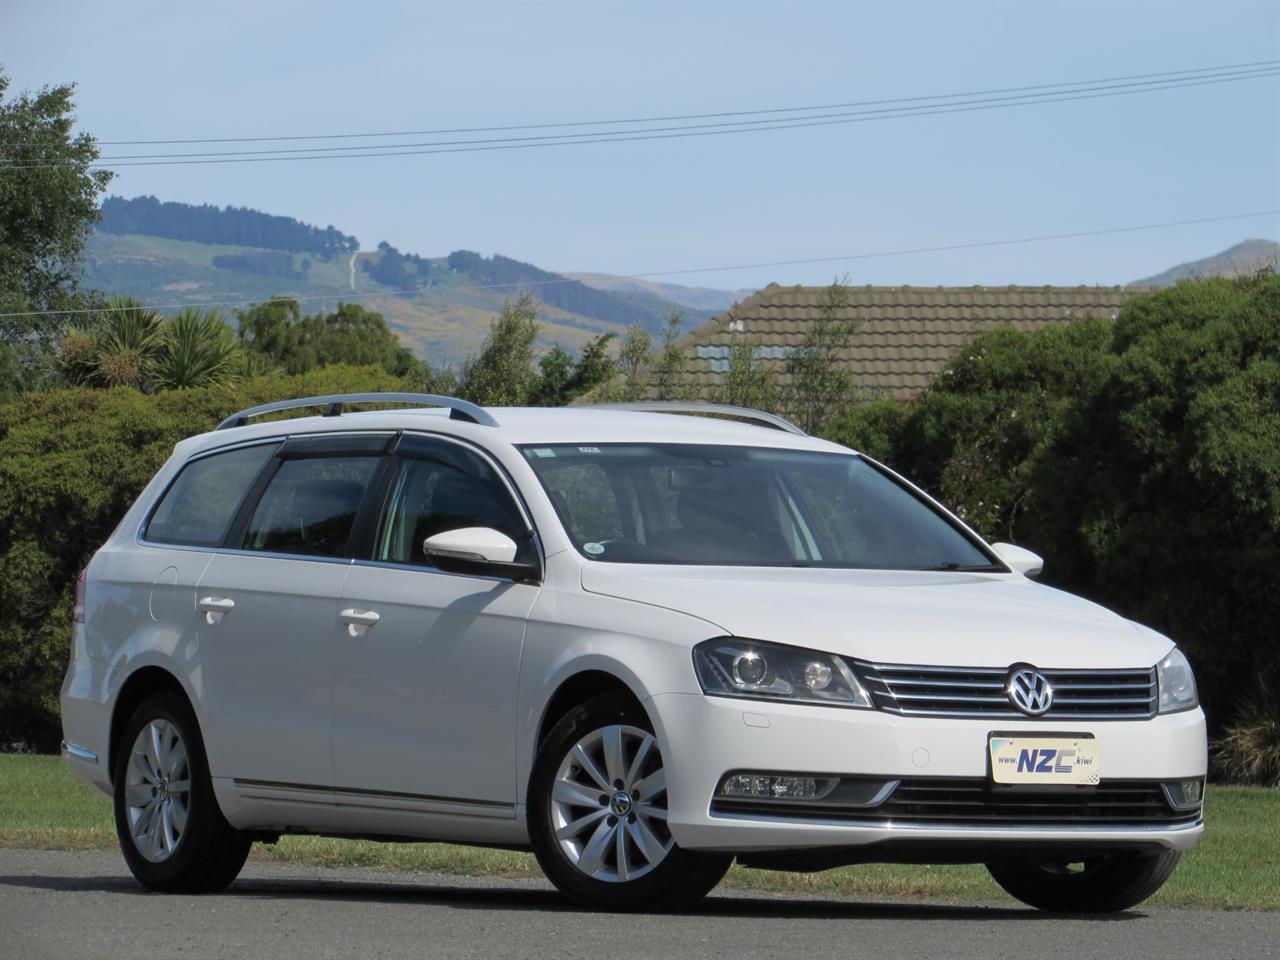 NZC best hot price for 2014 Volkswagen PASSAT in Christchurch